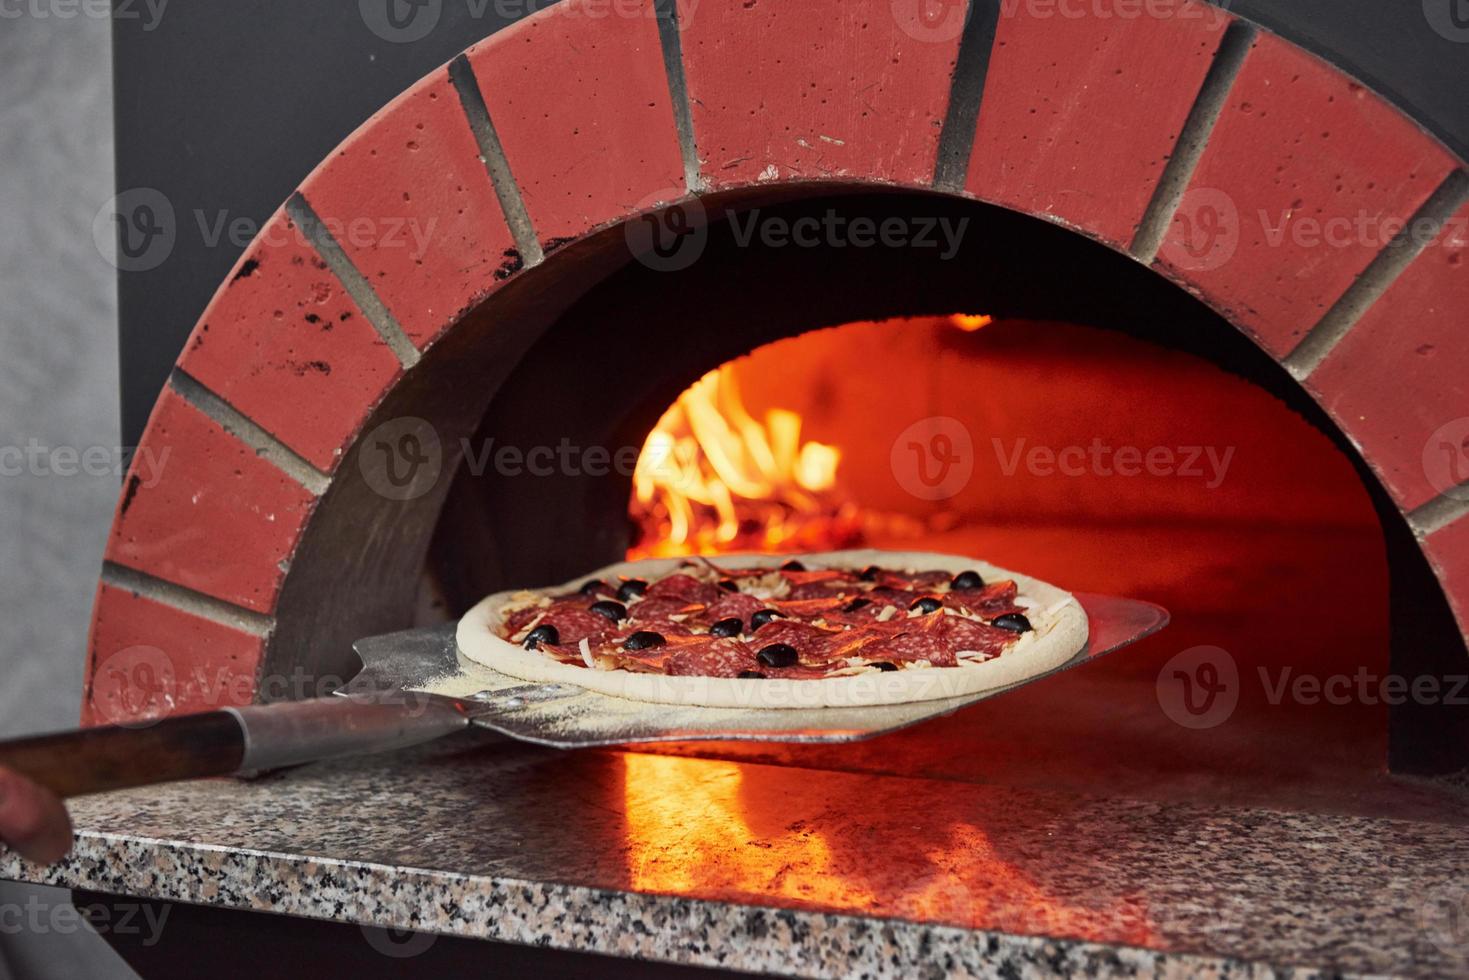 mettere dentro la pizza. fuoco che brucia nella fornace. vista ravvicinata del legno in fiamme foto